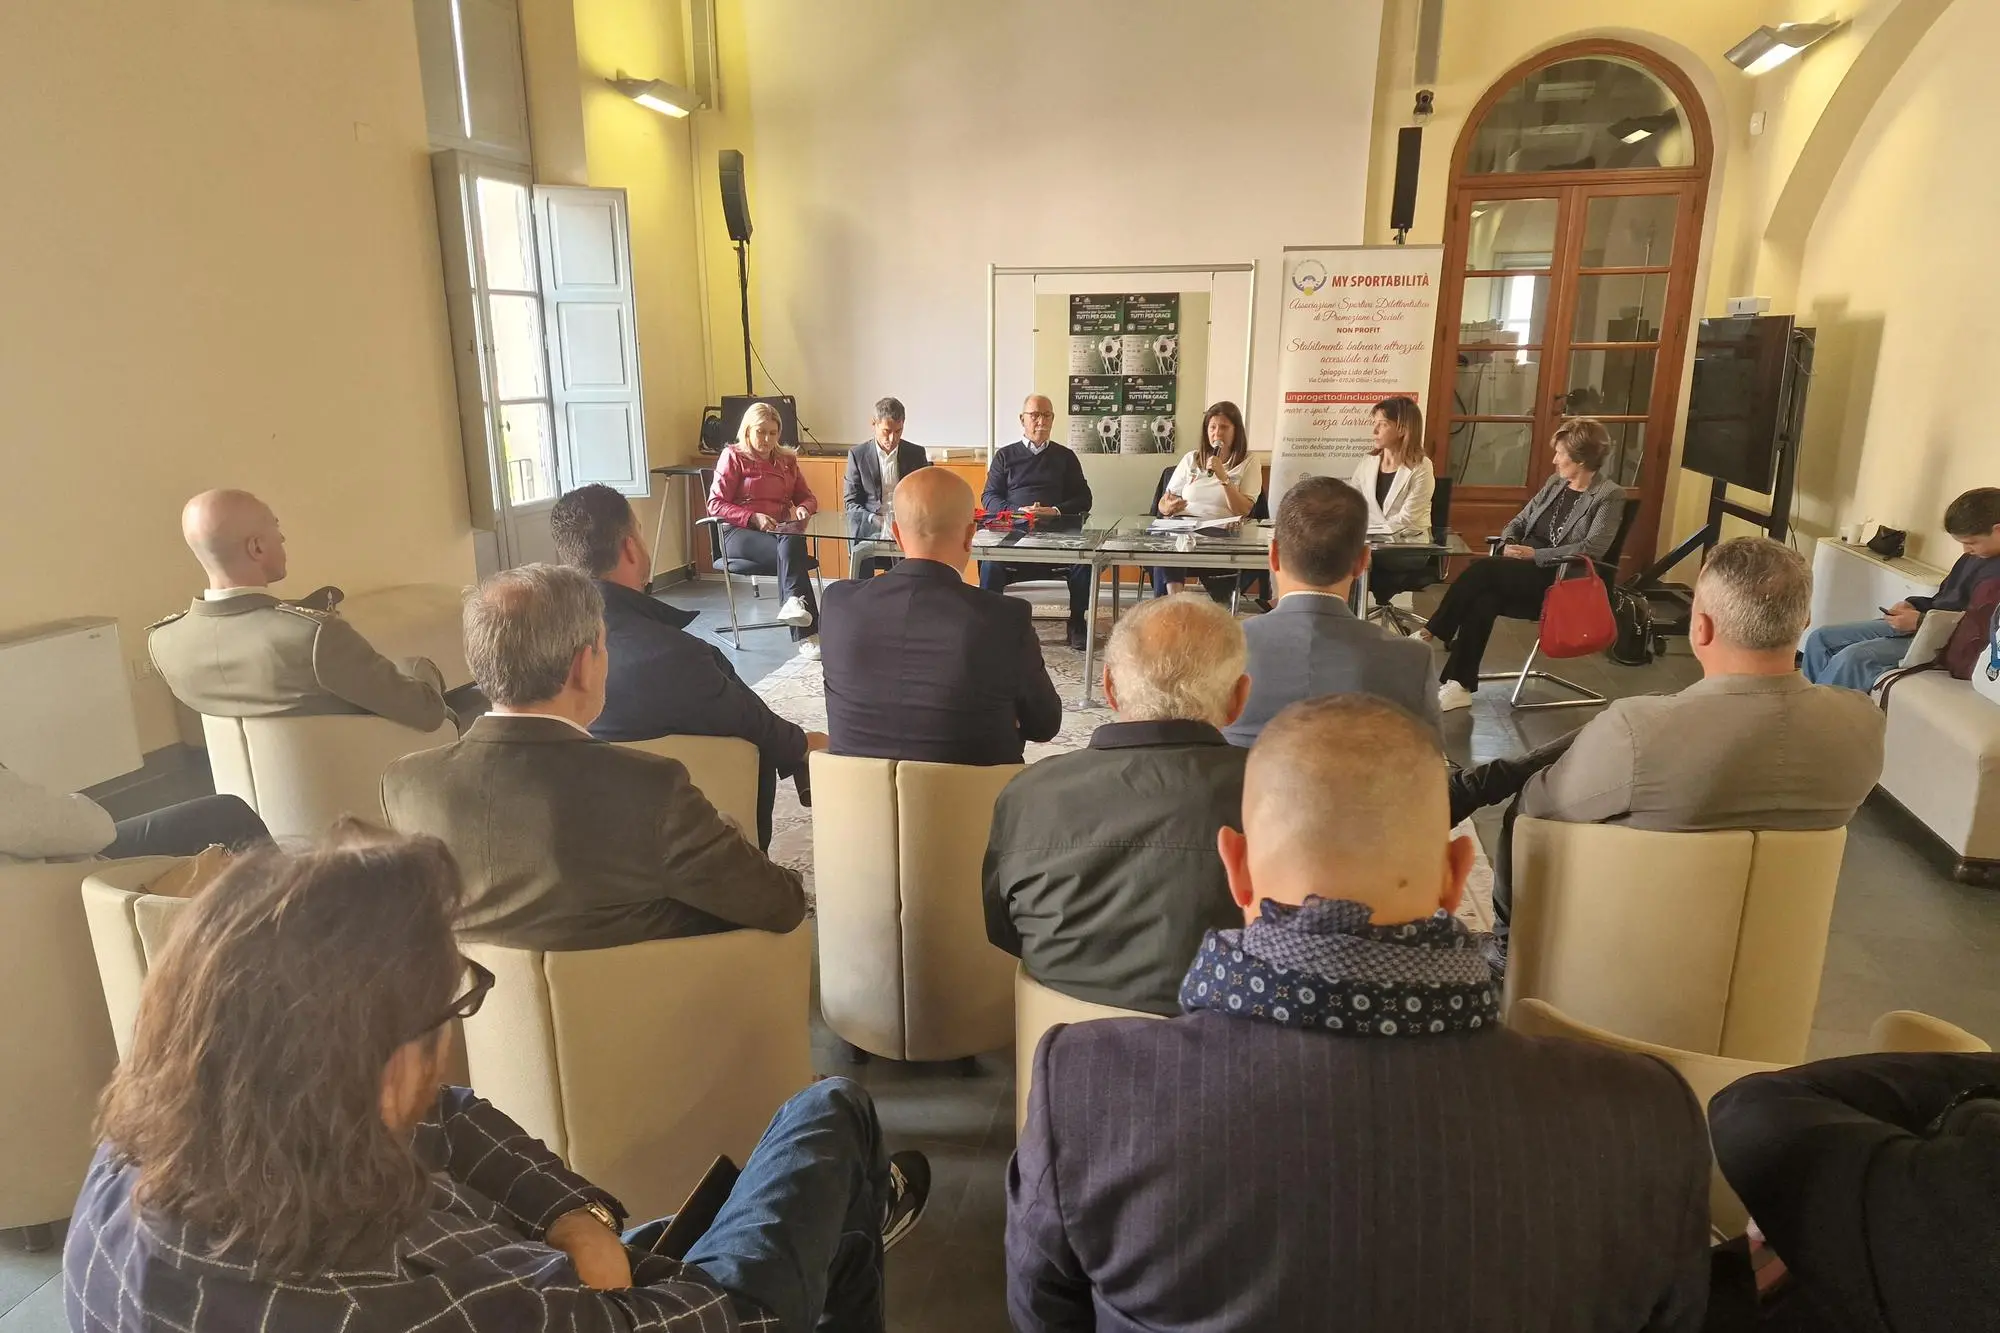 La presentazione dell'iniziativa a Sassari (foto Floris)